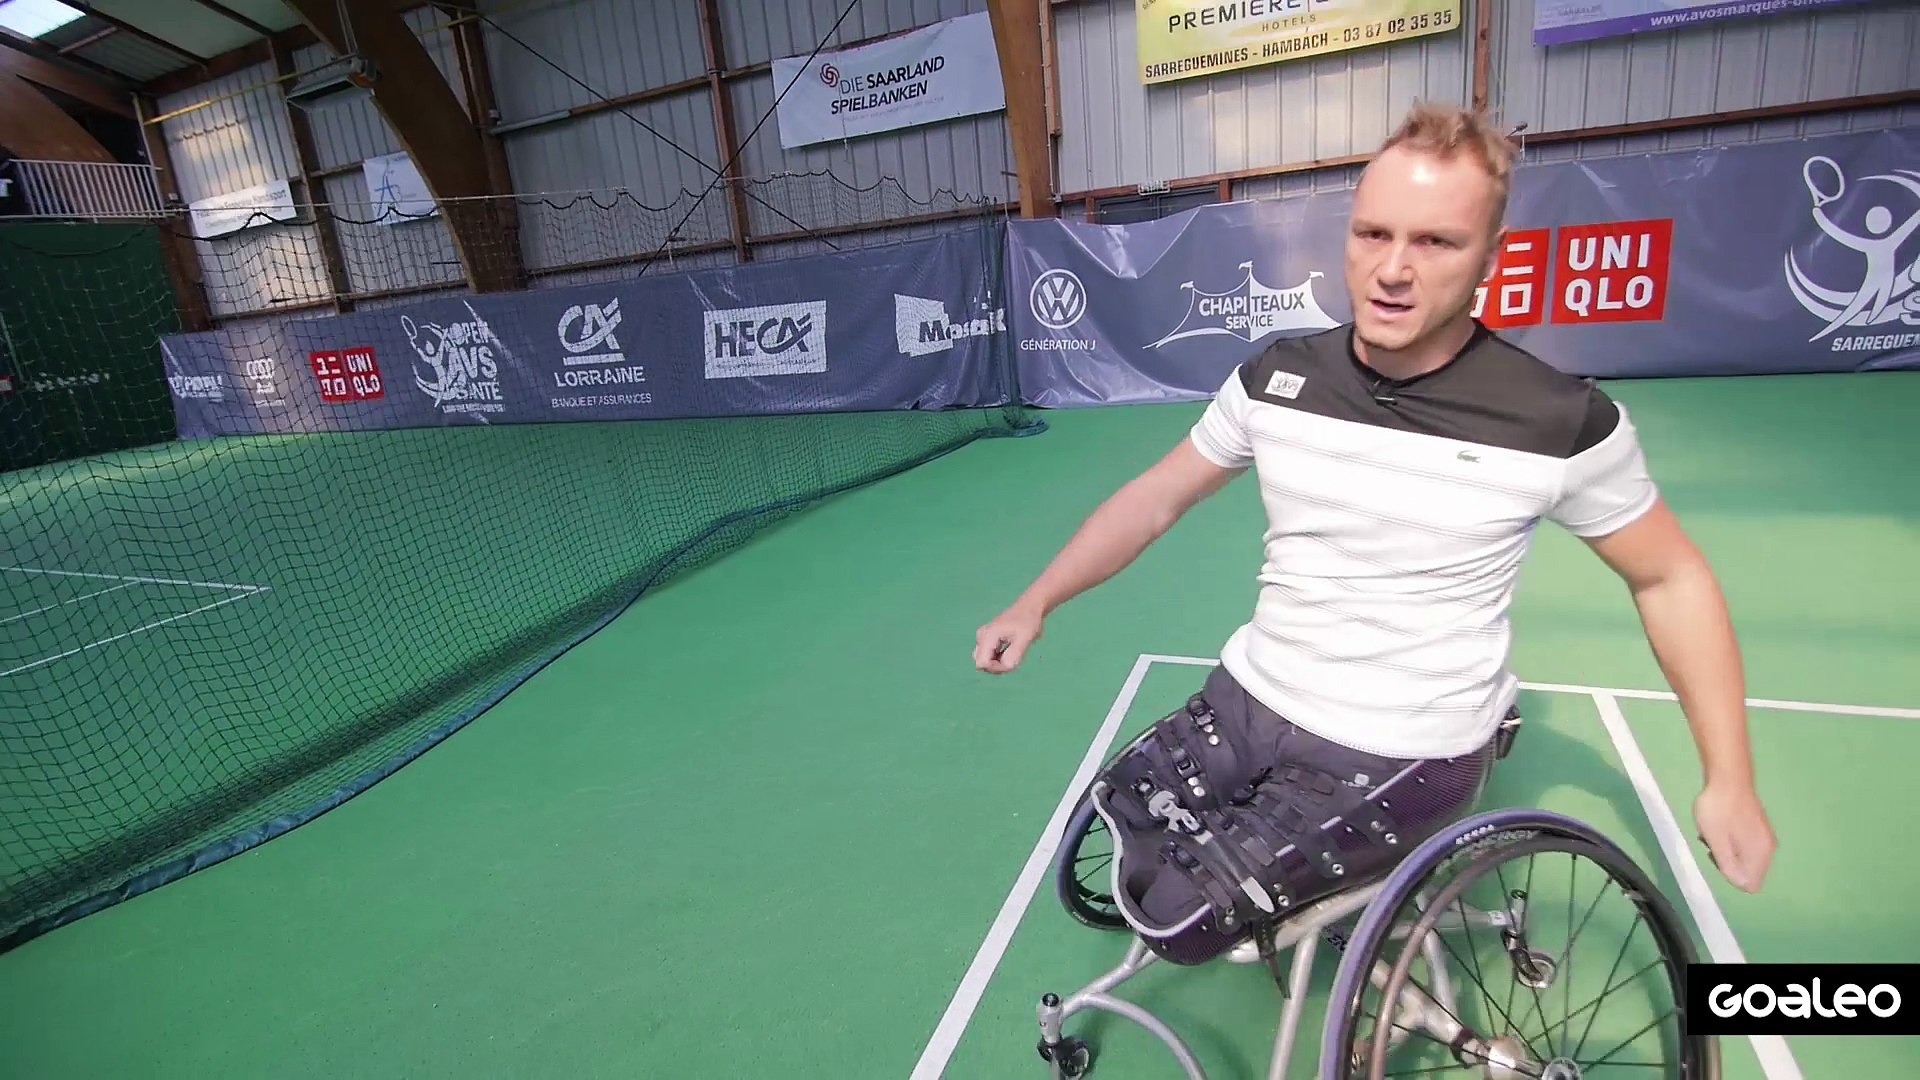 L'échauffement par Nicolas Peifer - Tennis en fauteuil - Vidéo Dailymotion